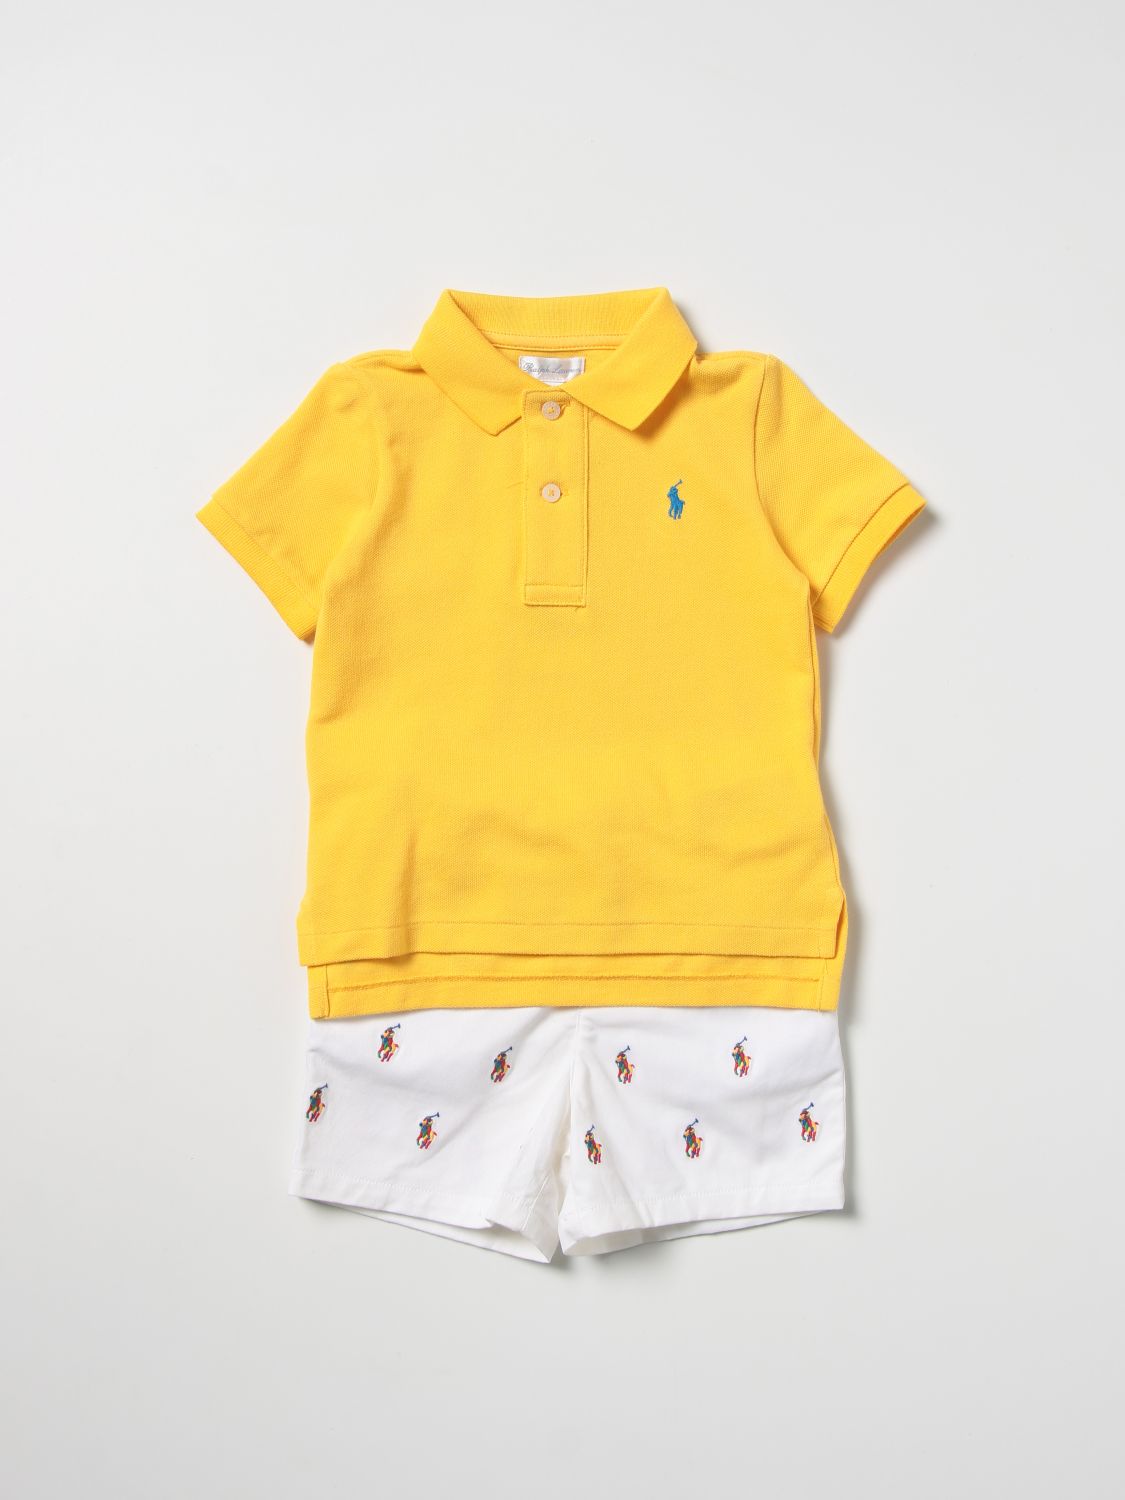 Completo Polo Ralph Lauren: Tuta bambino Polo Ralph Lauren giallo 1